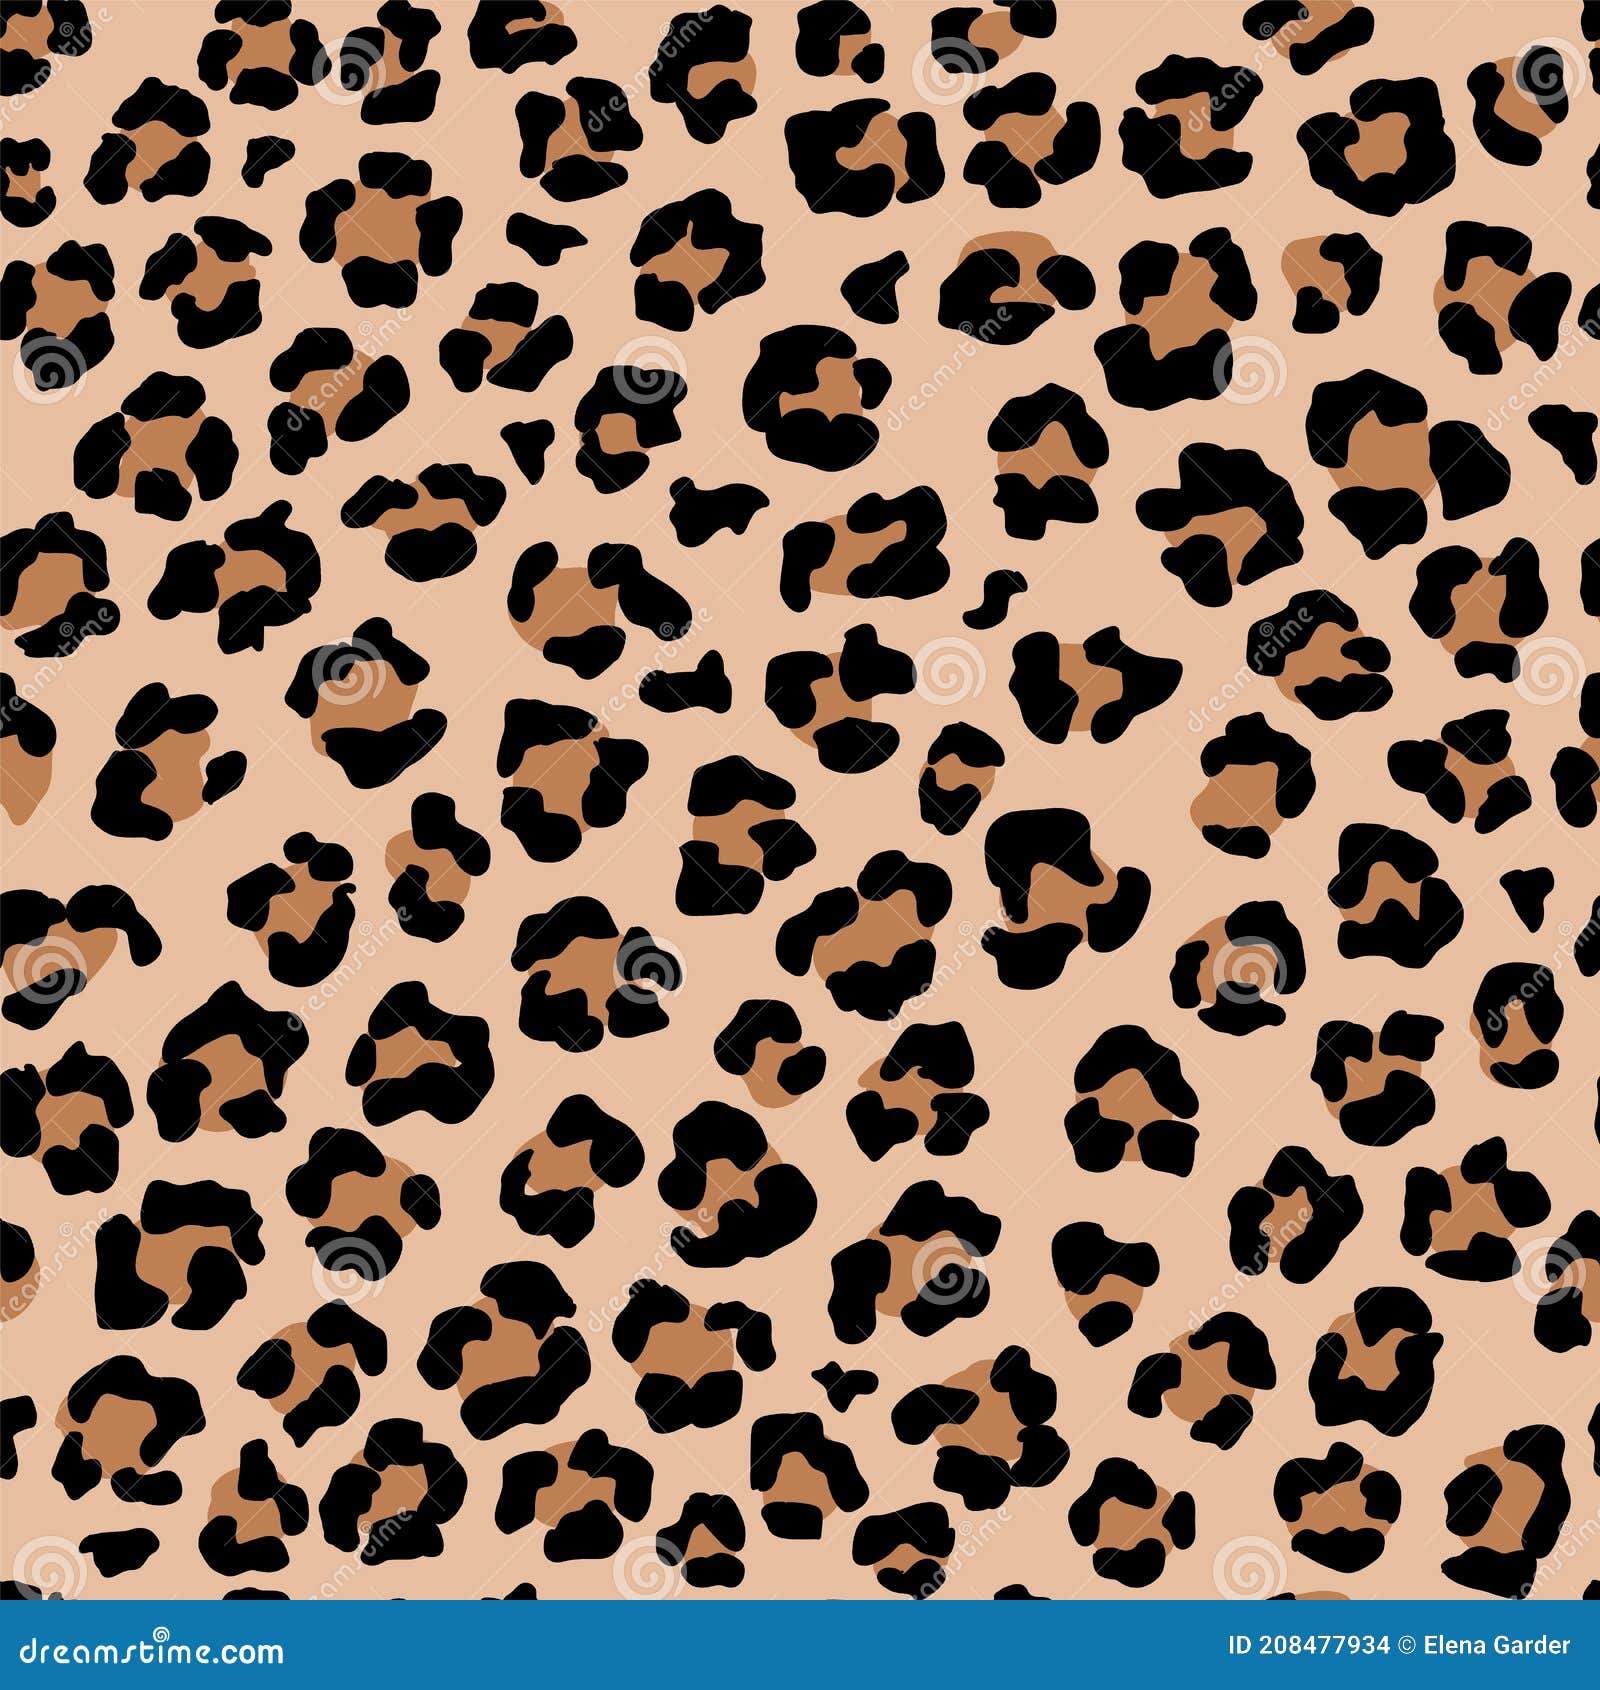 Leopard Seamless Pattern. Wild Animal Print Stock Illustration ...